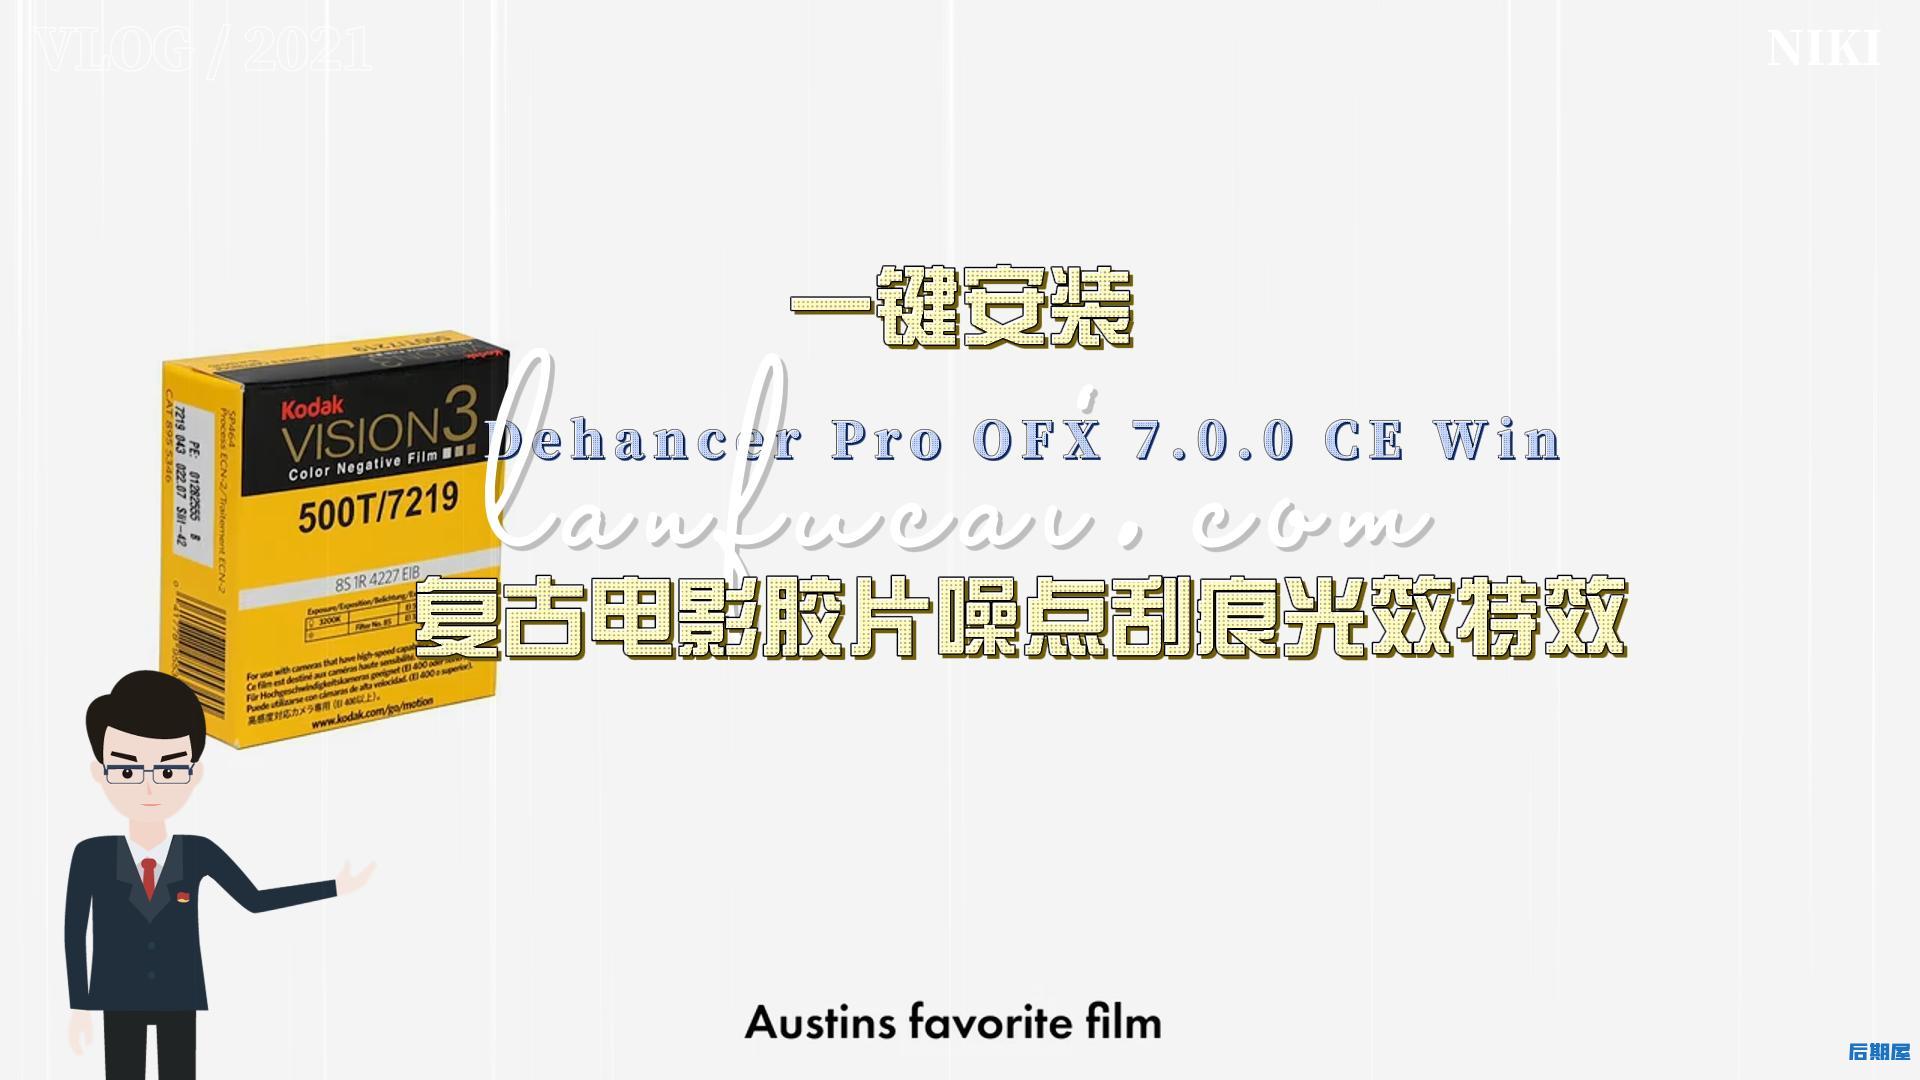 达芬奇插件-复古电影胶片噪点刮痕光效特效 Dehancer Pro OFX 7.0.0 CE Win一键安装